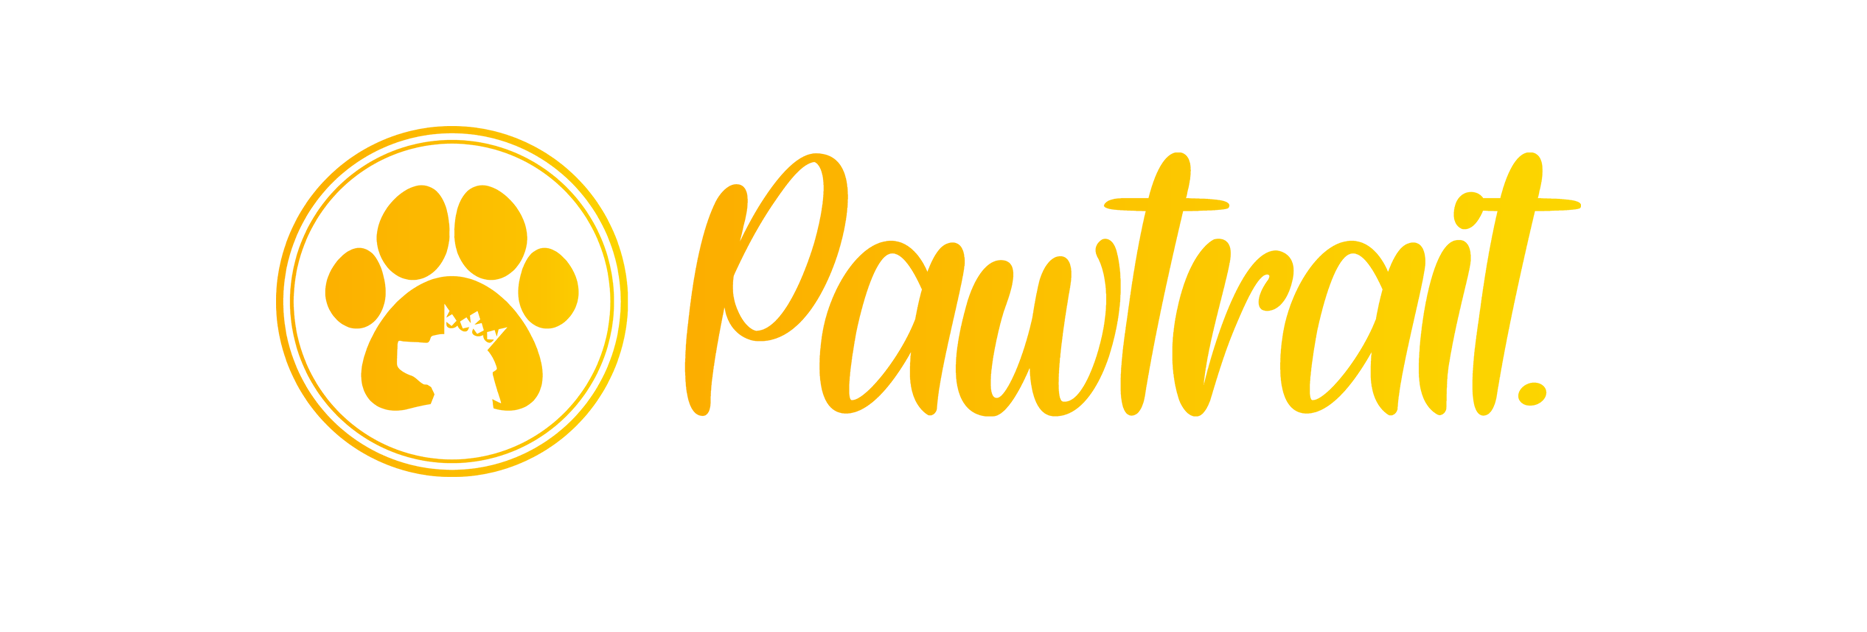 Pawtrait - Portrety dla zwierz膮t